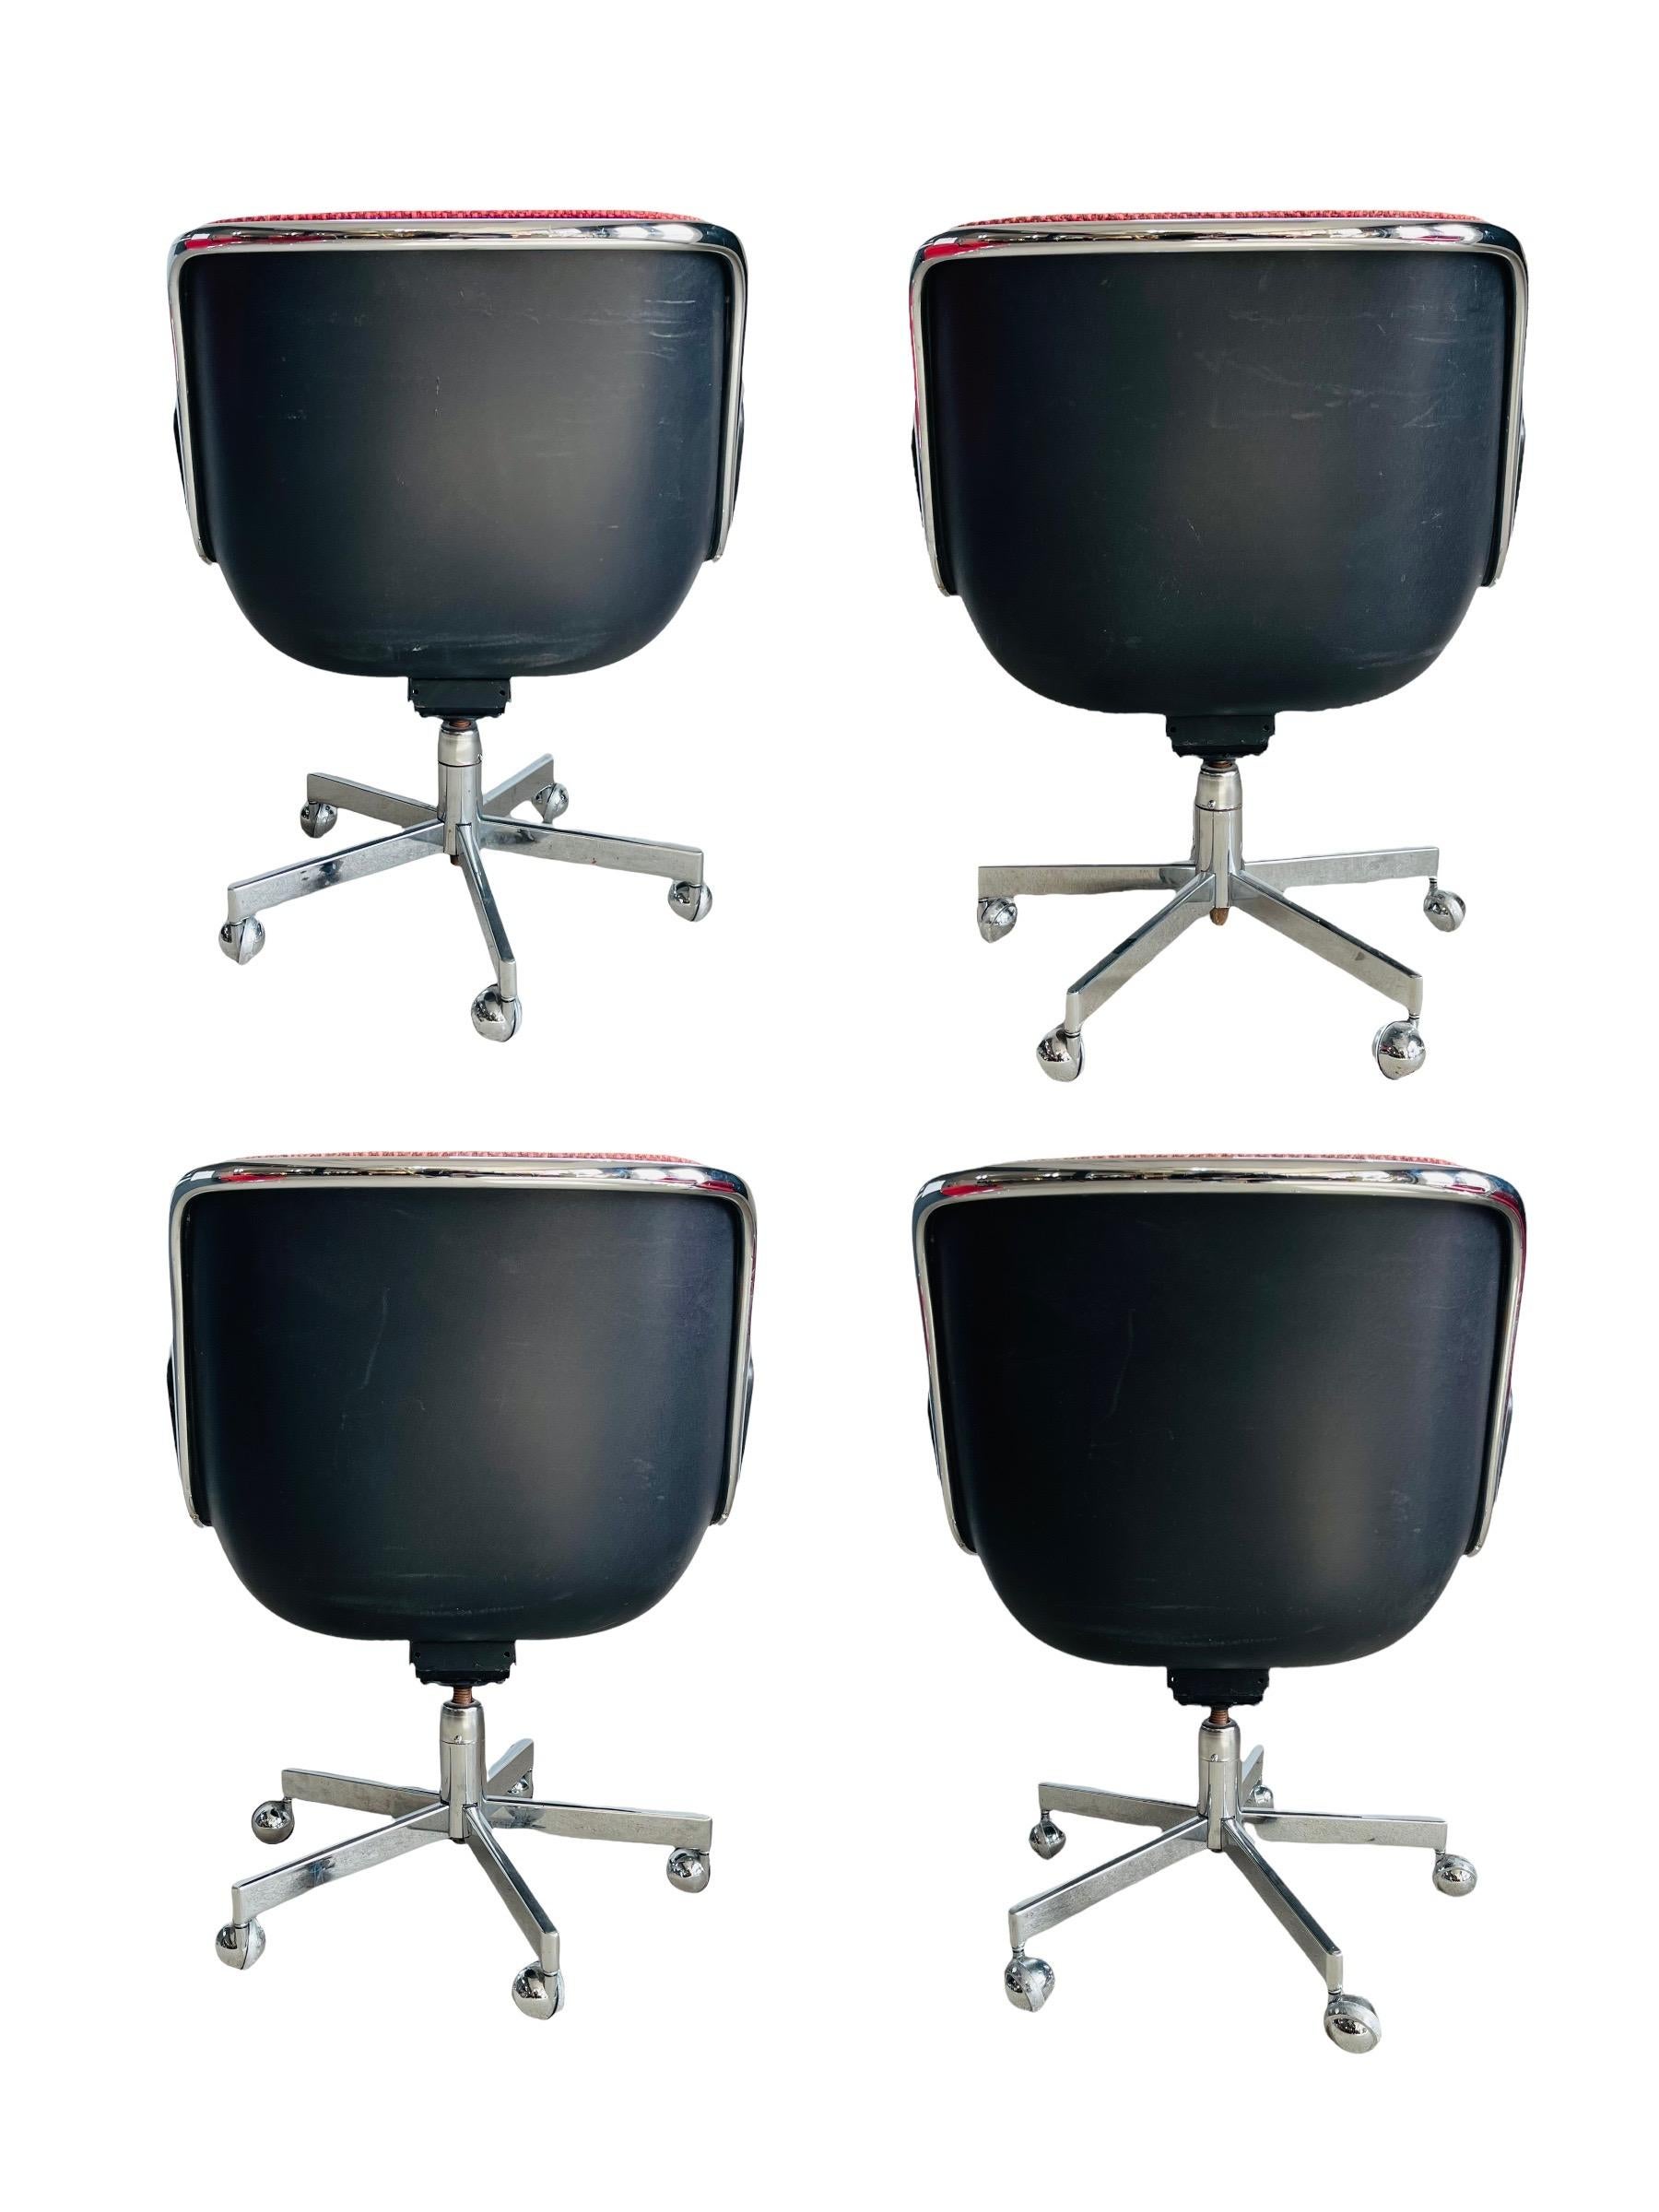 Ensemble de quatre fauteuils de direction conçus par Charles Pollock pour Knoll International. Ces chaises sont signées et datées de 1977 avec le tissu d'origine. Toutes les chaises sont en bon état vintage avec une usure normale correspondant à